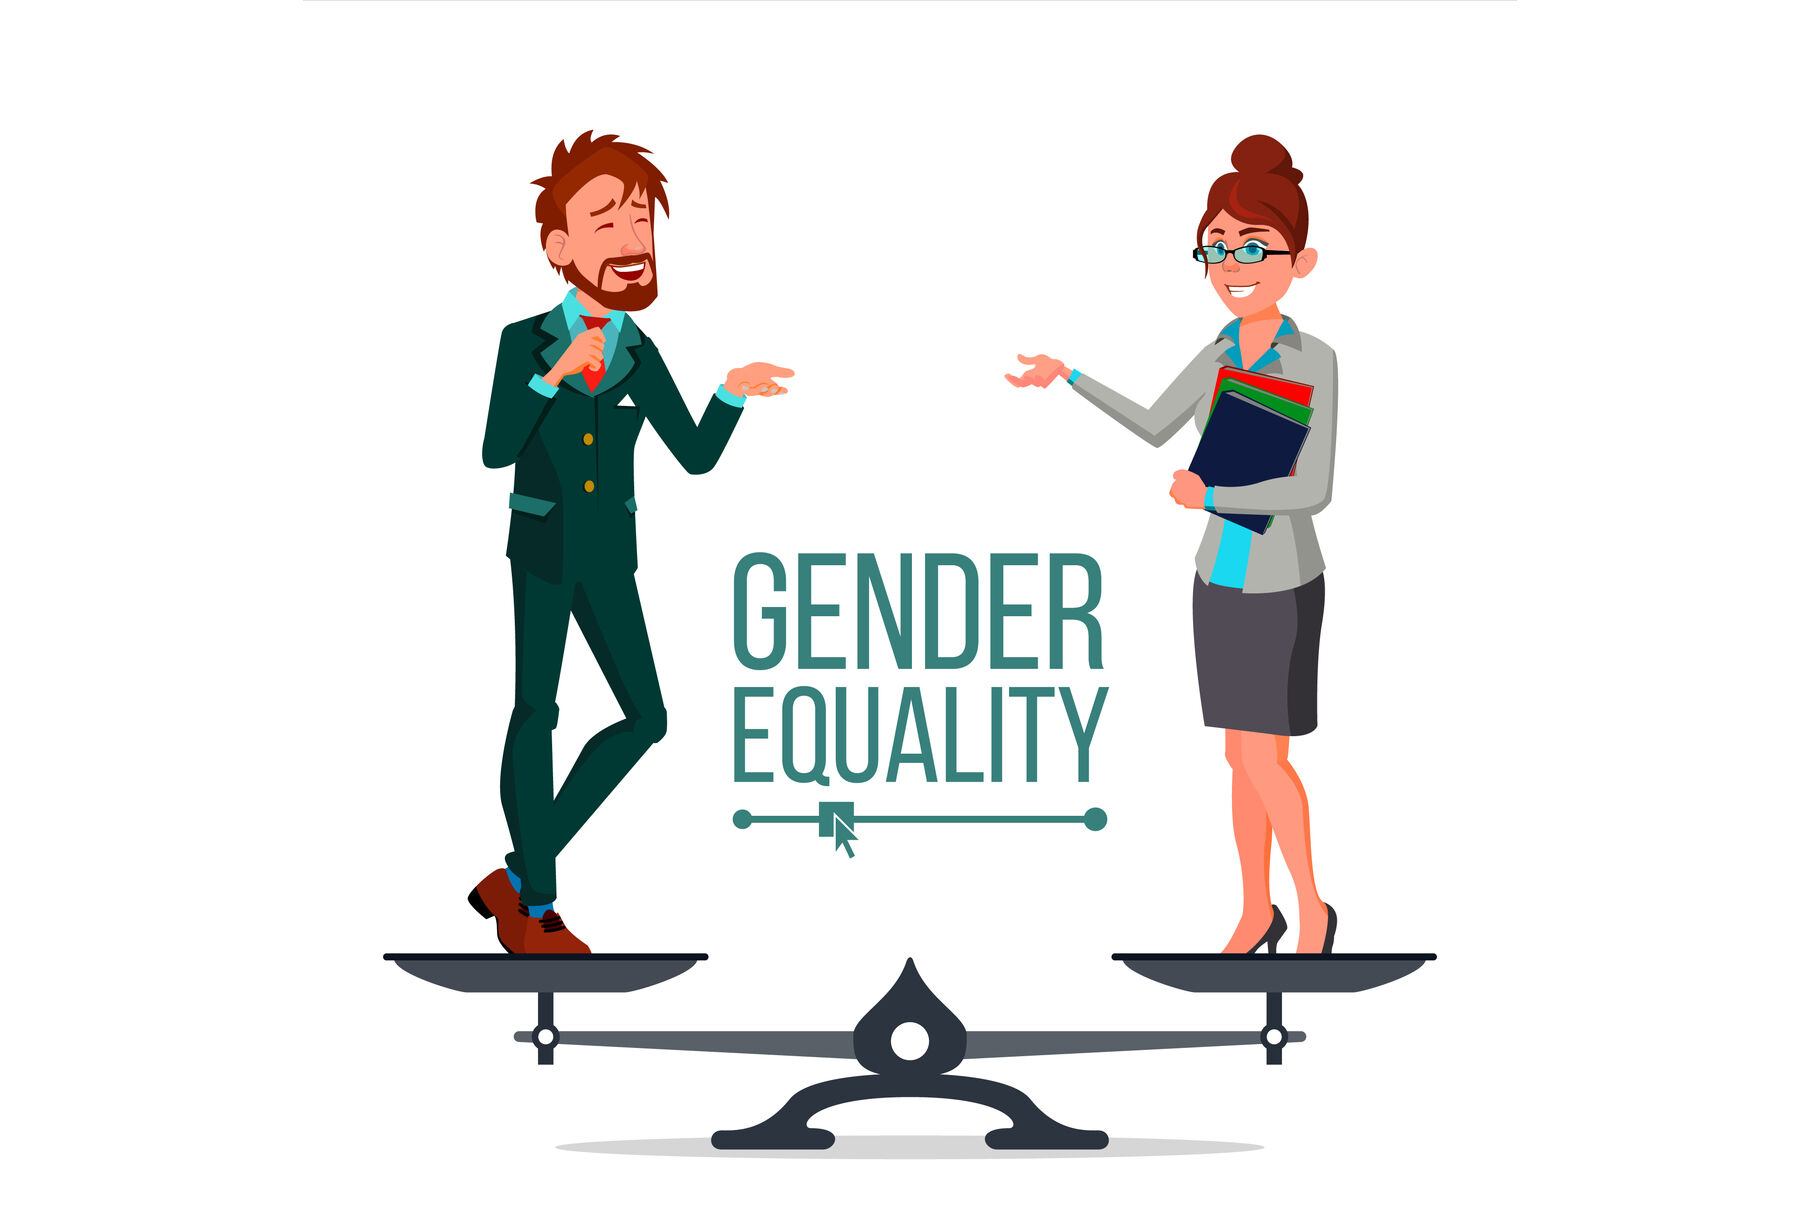 representation of gender equality